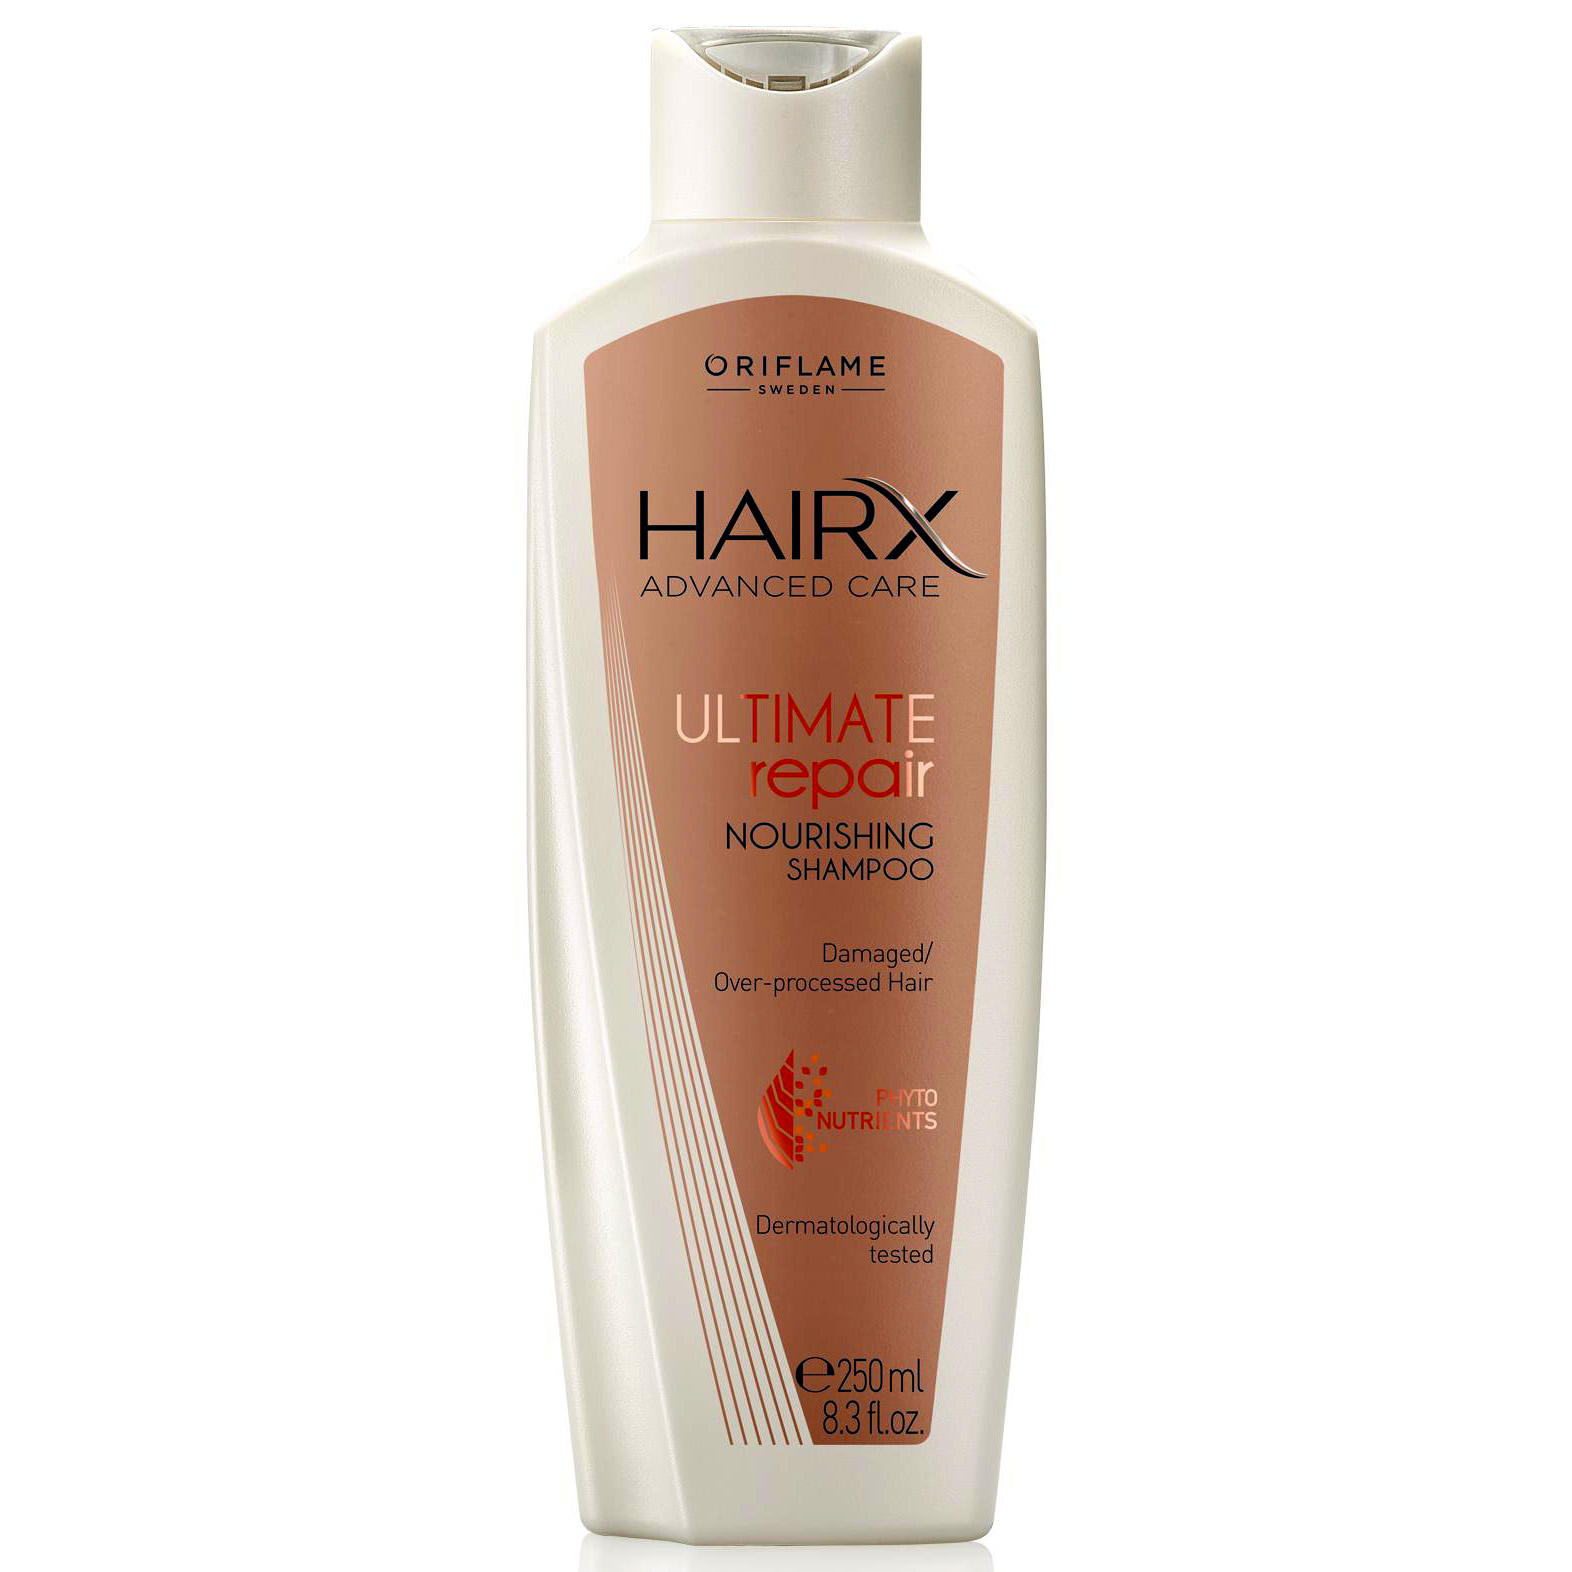 oriflame hair ultimate repair szampon opinie